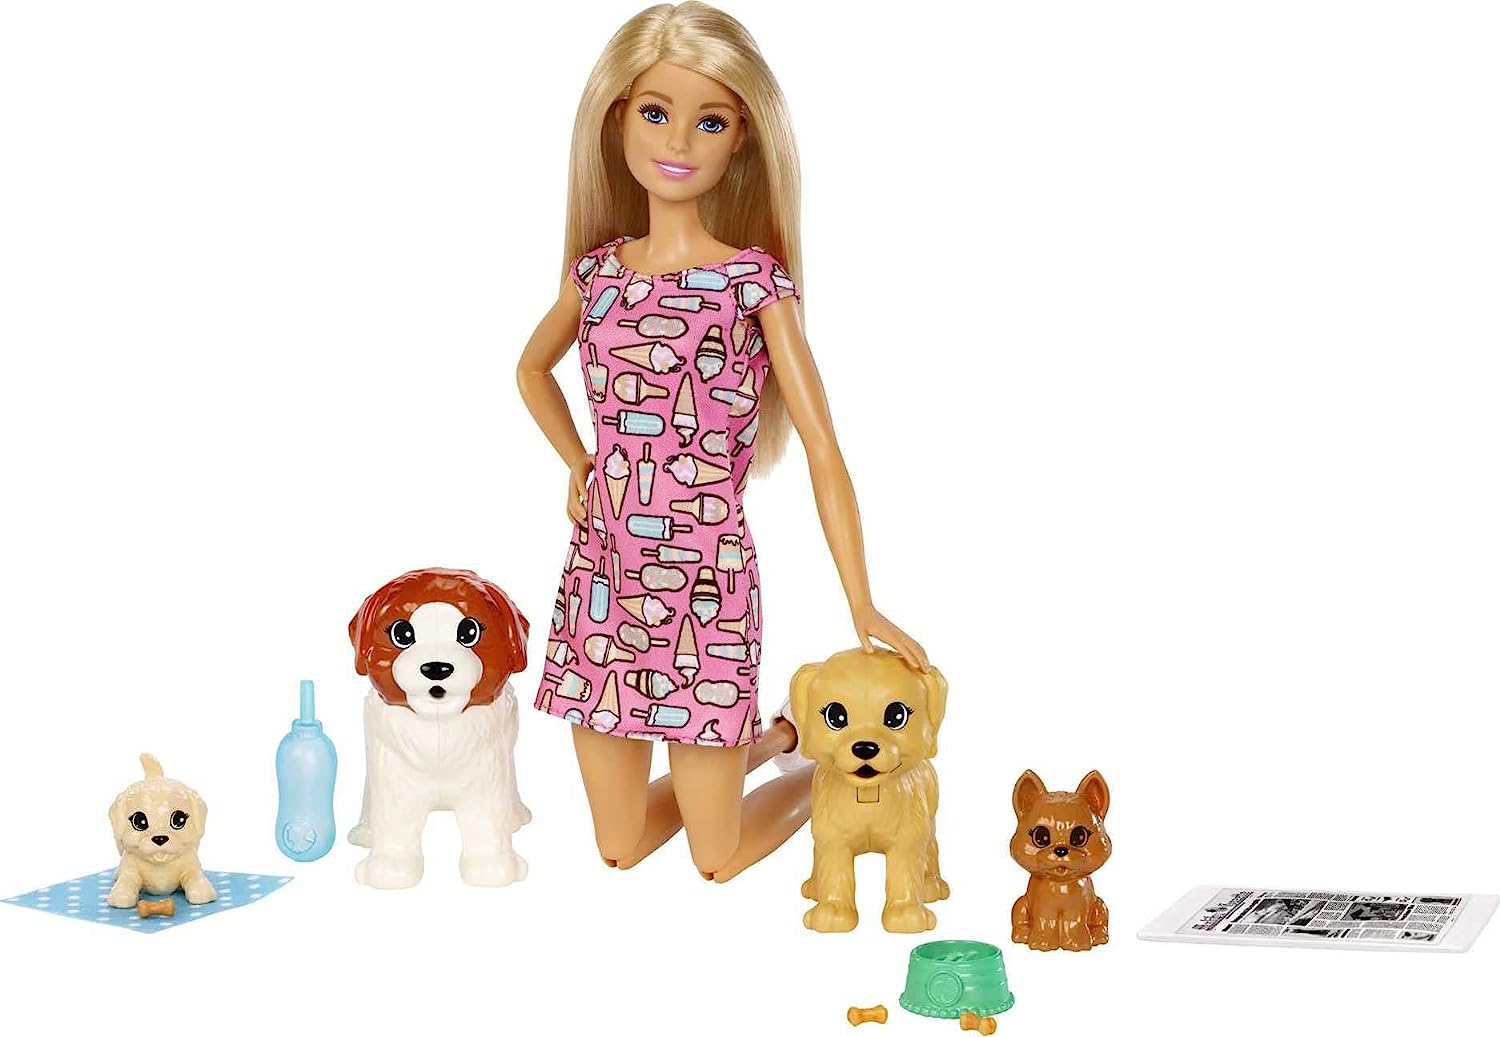 Barbie Outfit Of The Day - Jogos na Internet  Roupas para barbie, Roupa do  dia, Coisas de barbie